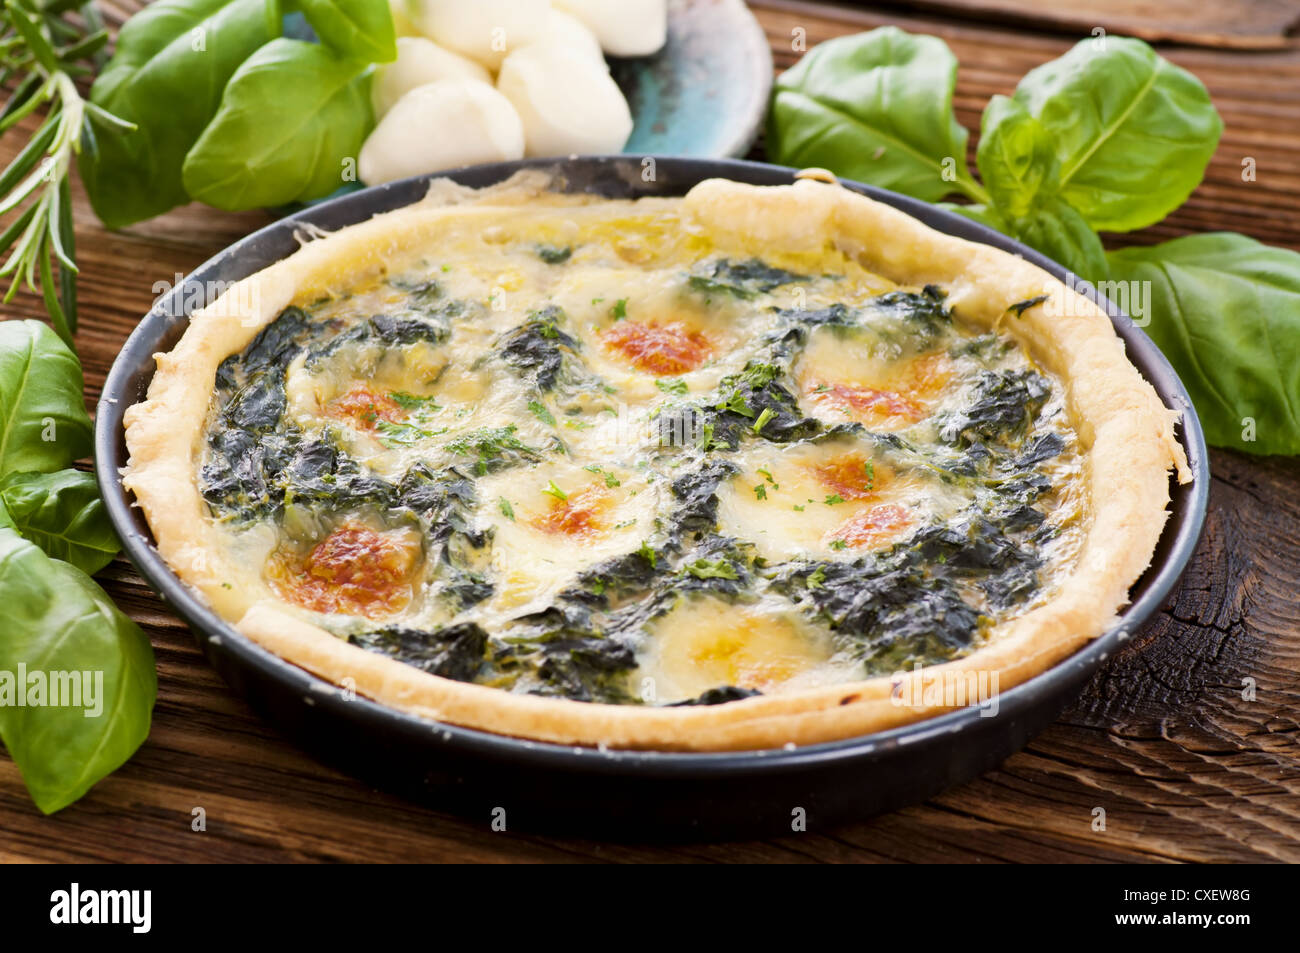 Quiche with mozzarella and spinach Stock Photo - Alamy